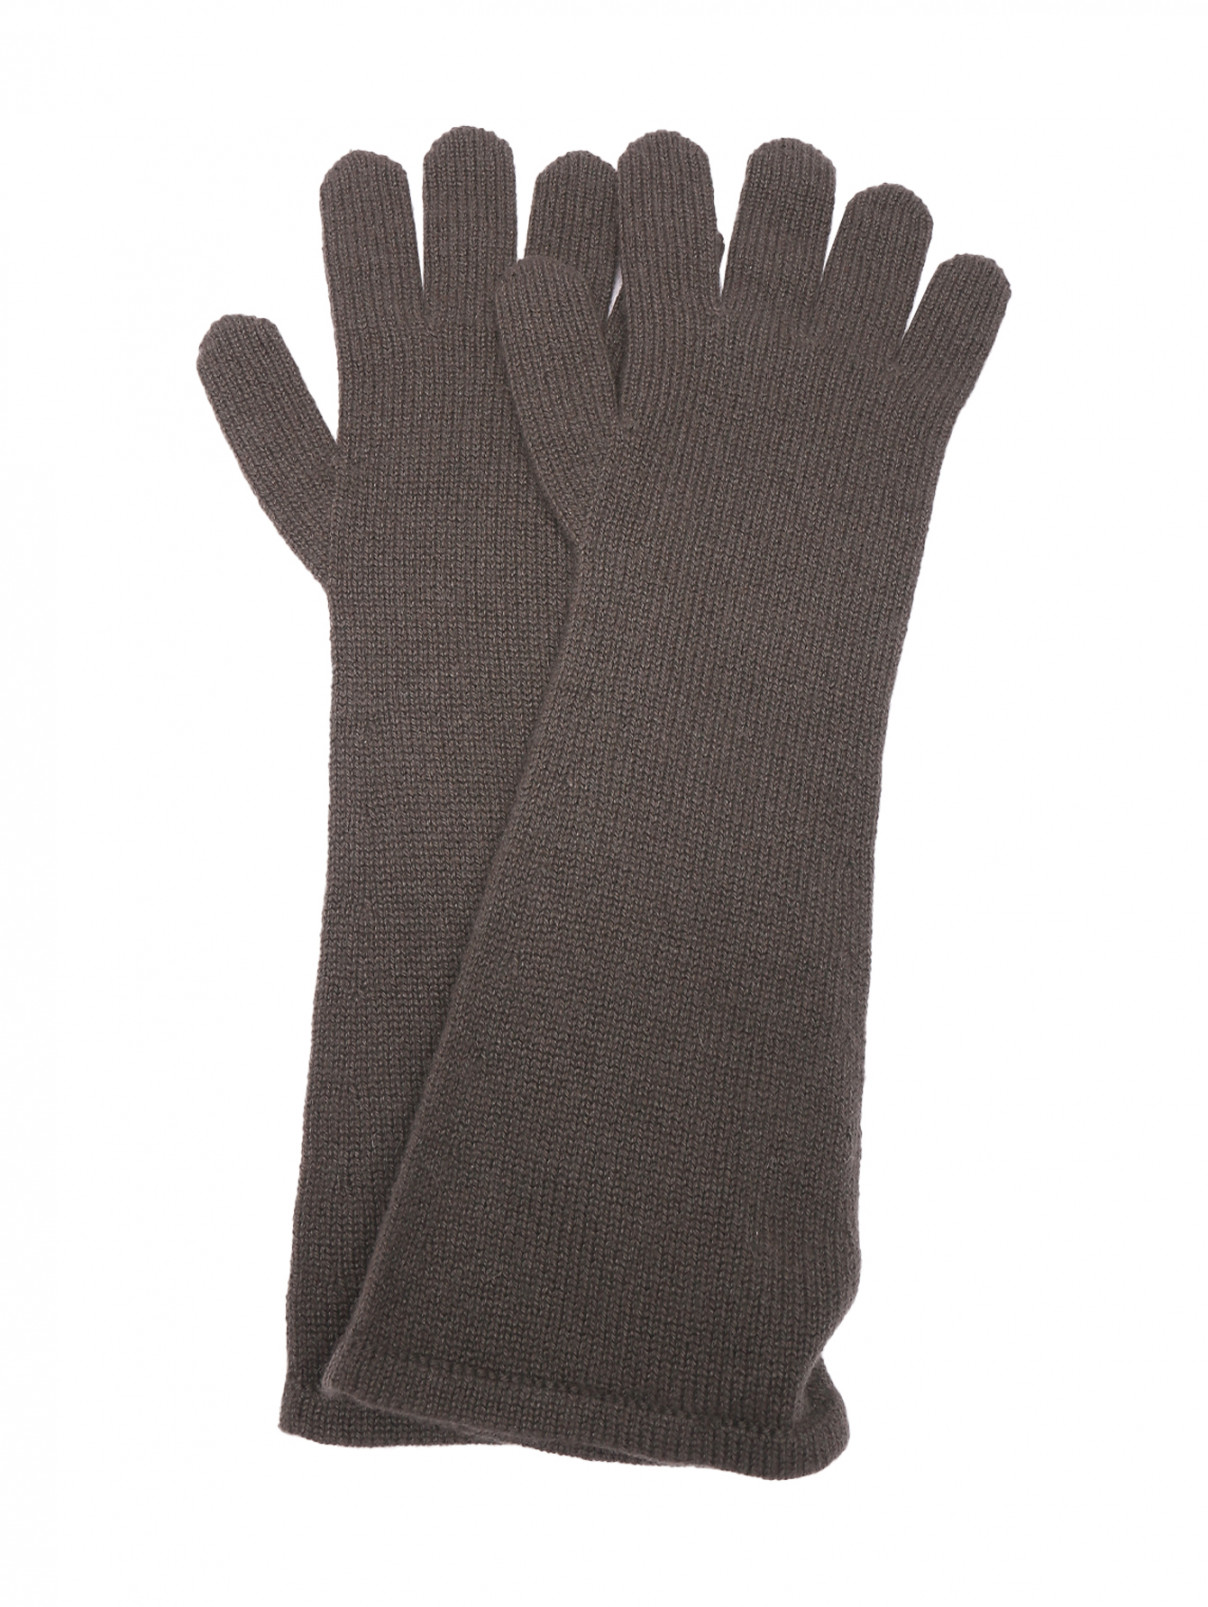 Длинные перчатки из кашемира Max Mara  –  Общий вид  – Цвет:  Коричневый